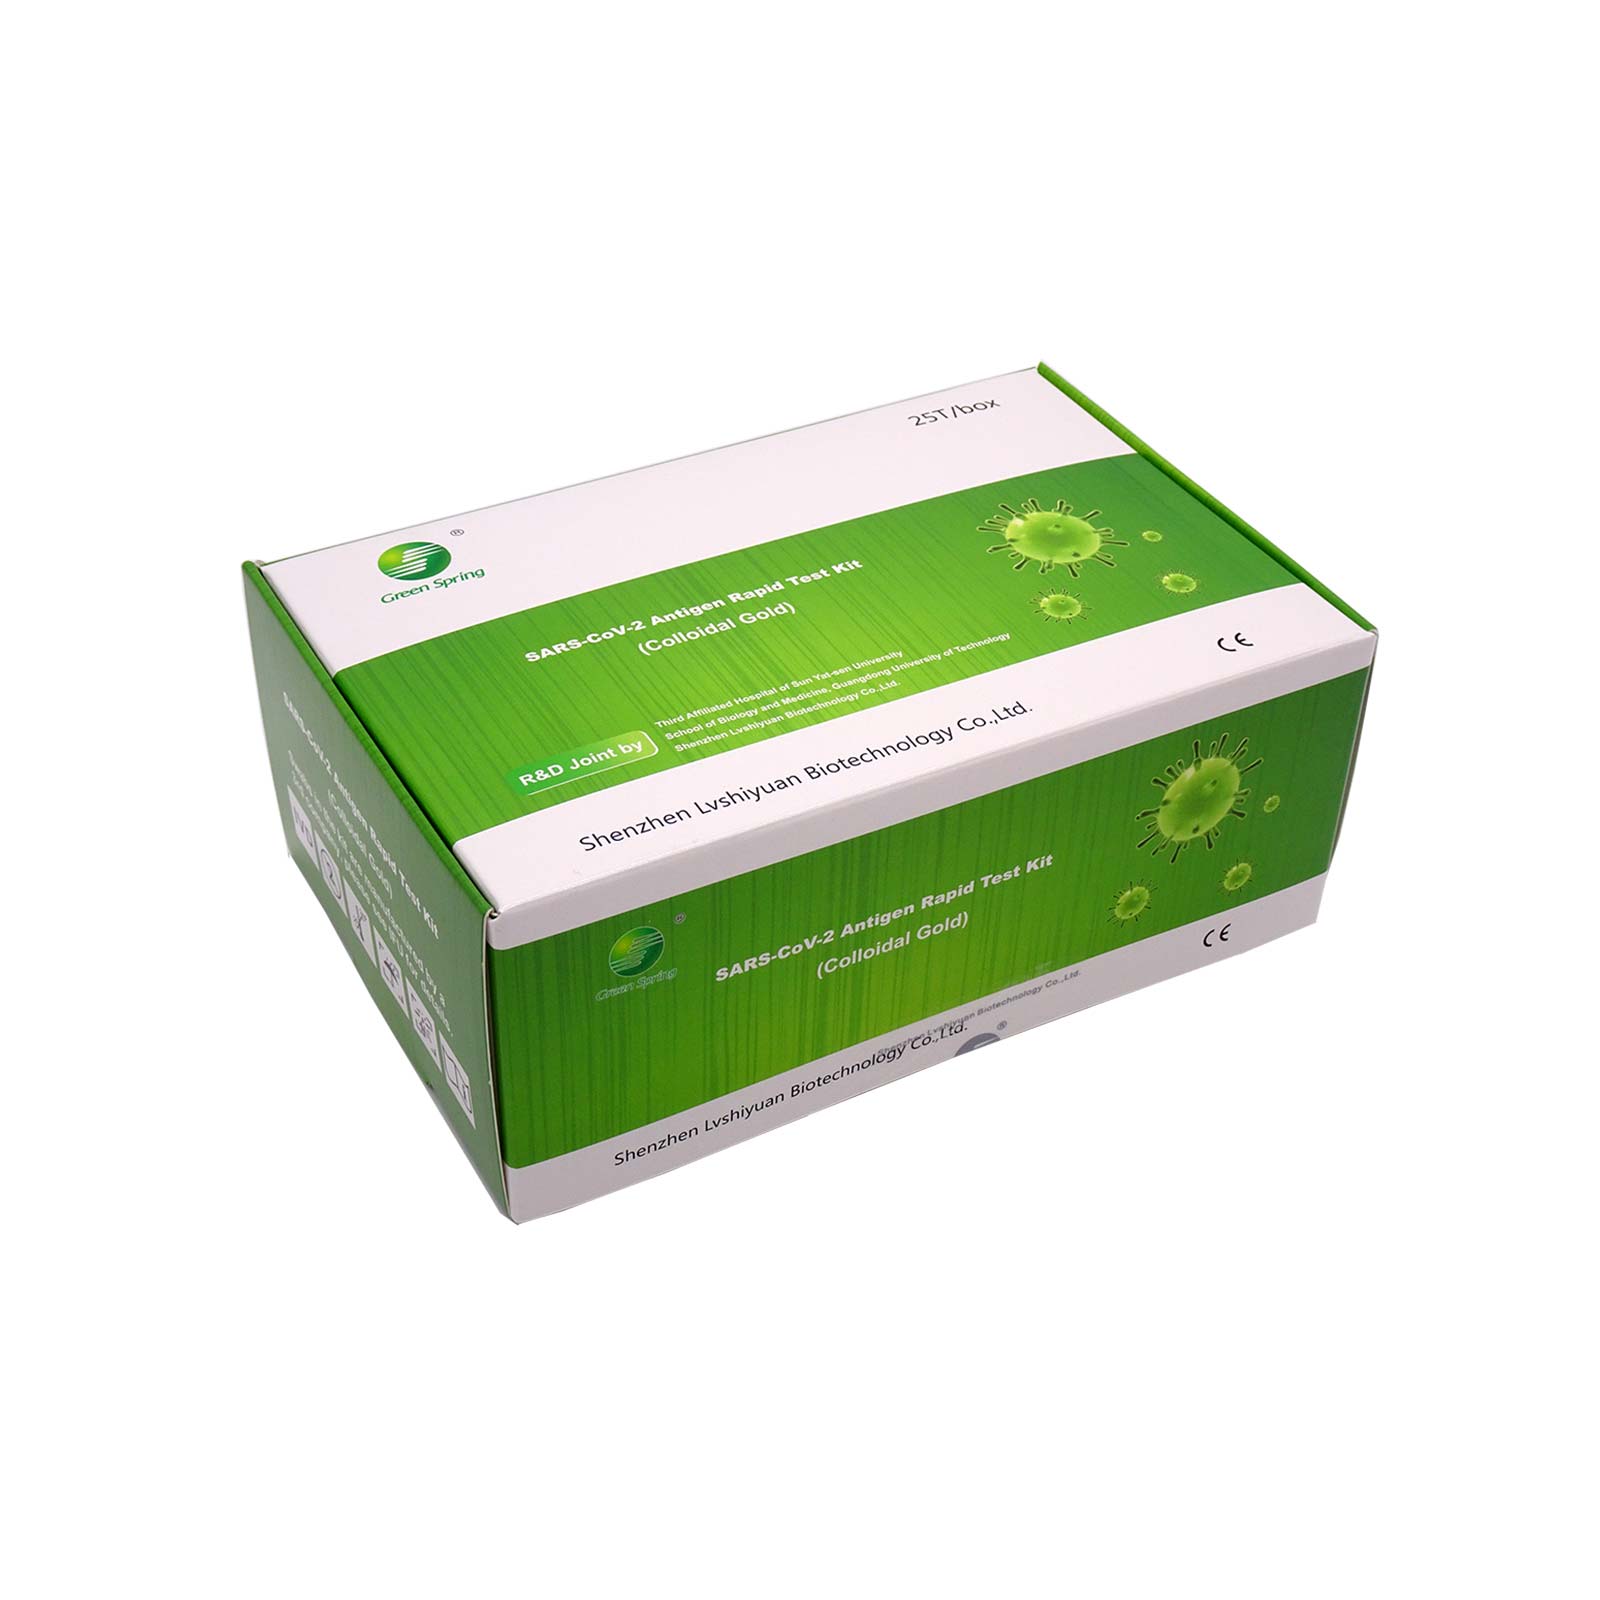 Antigen Schnelltest COVID-19 – Profitest GREEN SPRING® 4-in-1